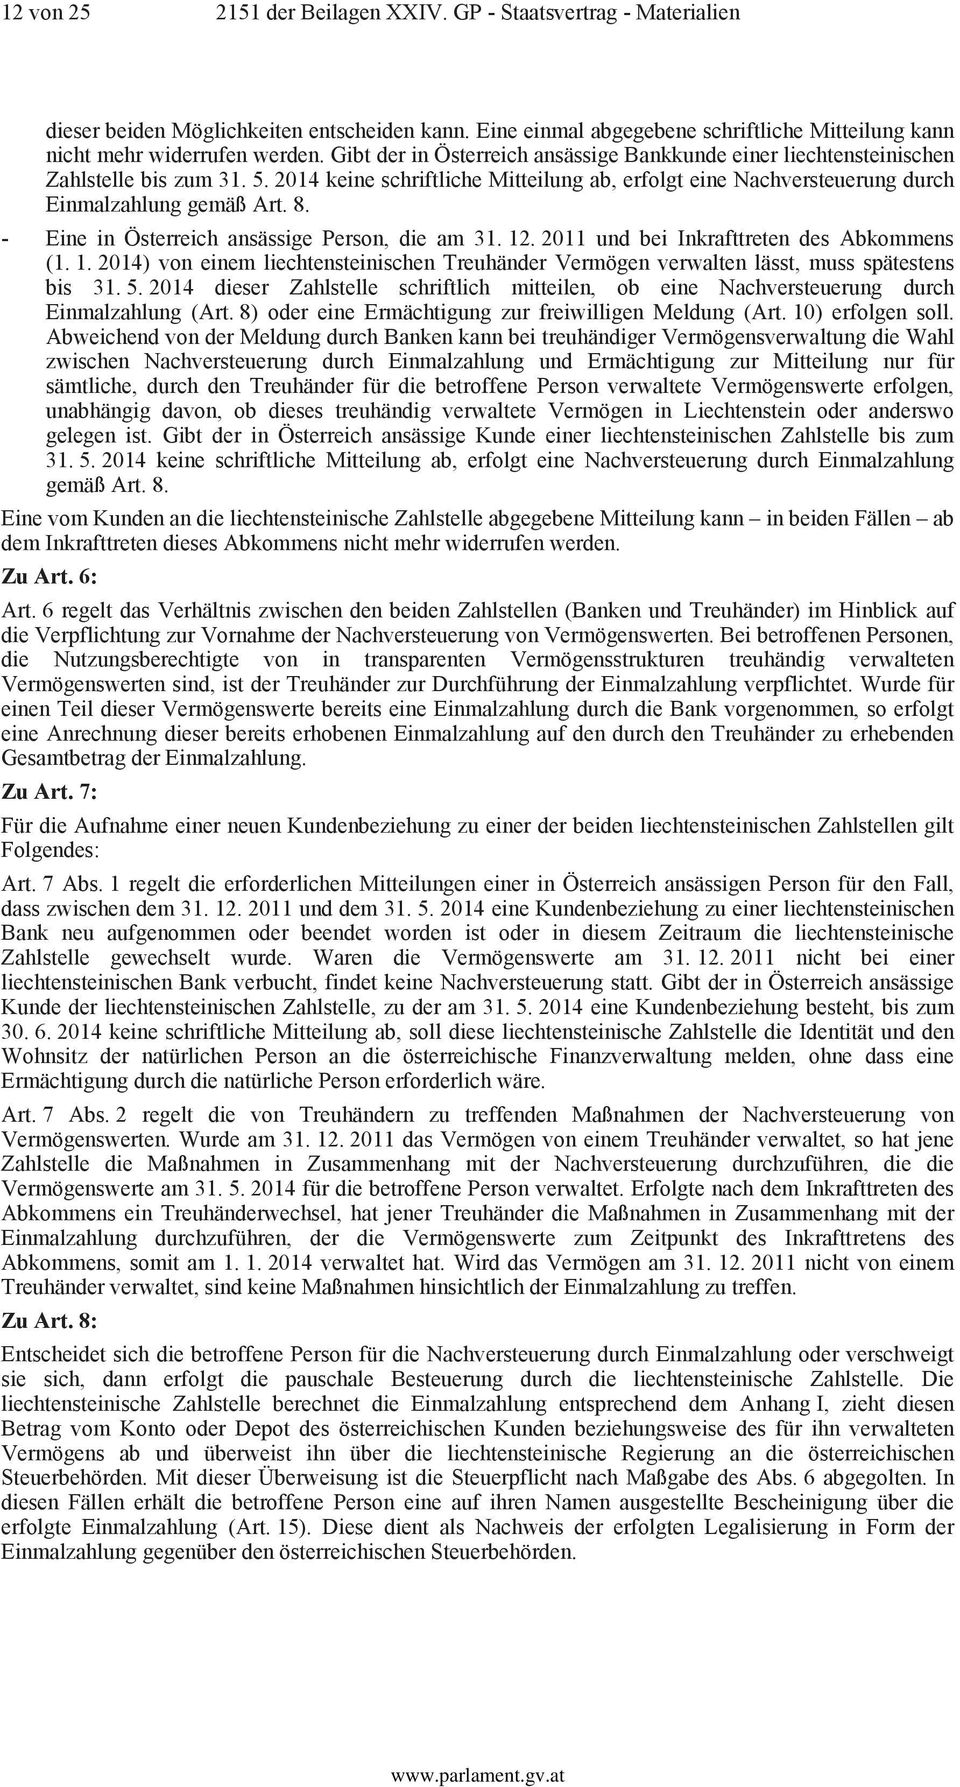 - Eine in Österreich ansässige Person, die am 31. 12. 2011 und bei Inkrafttreten des Abkommens (1. 1. 2014) von einem liechtensteinischen Treuhänder Vermögen verwalten lässt, muss spätestens bis 31.